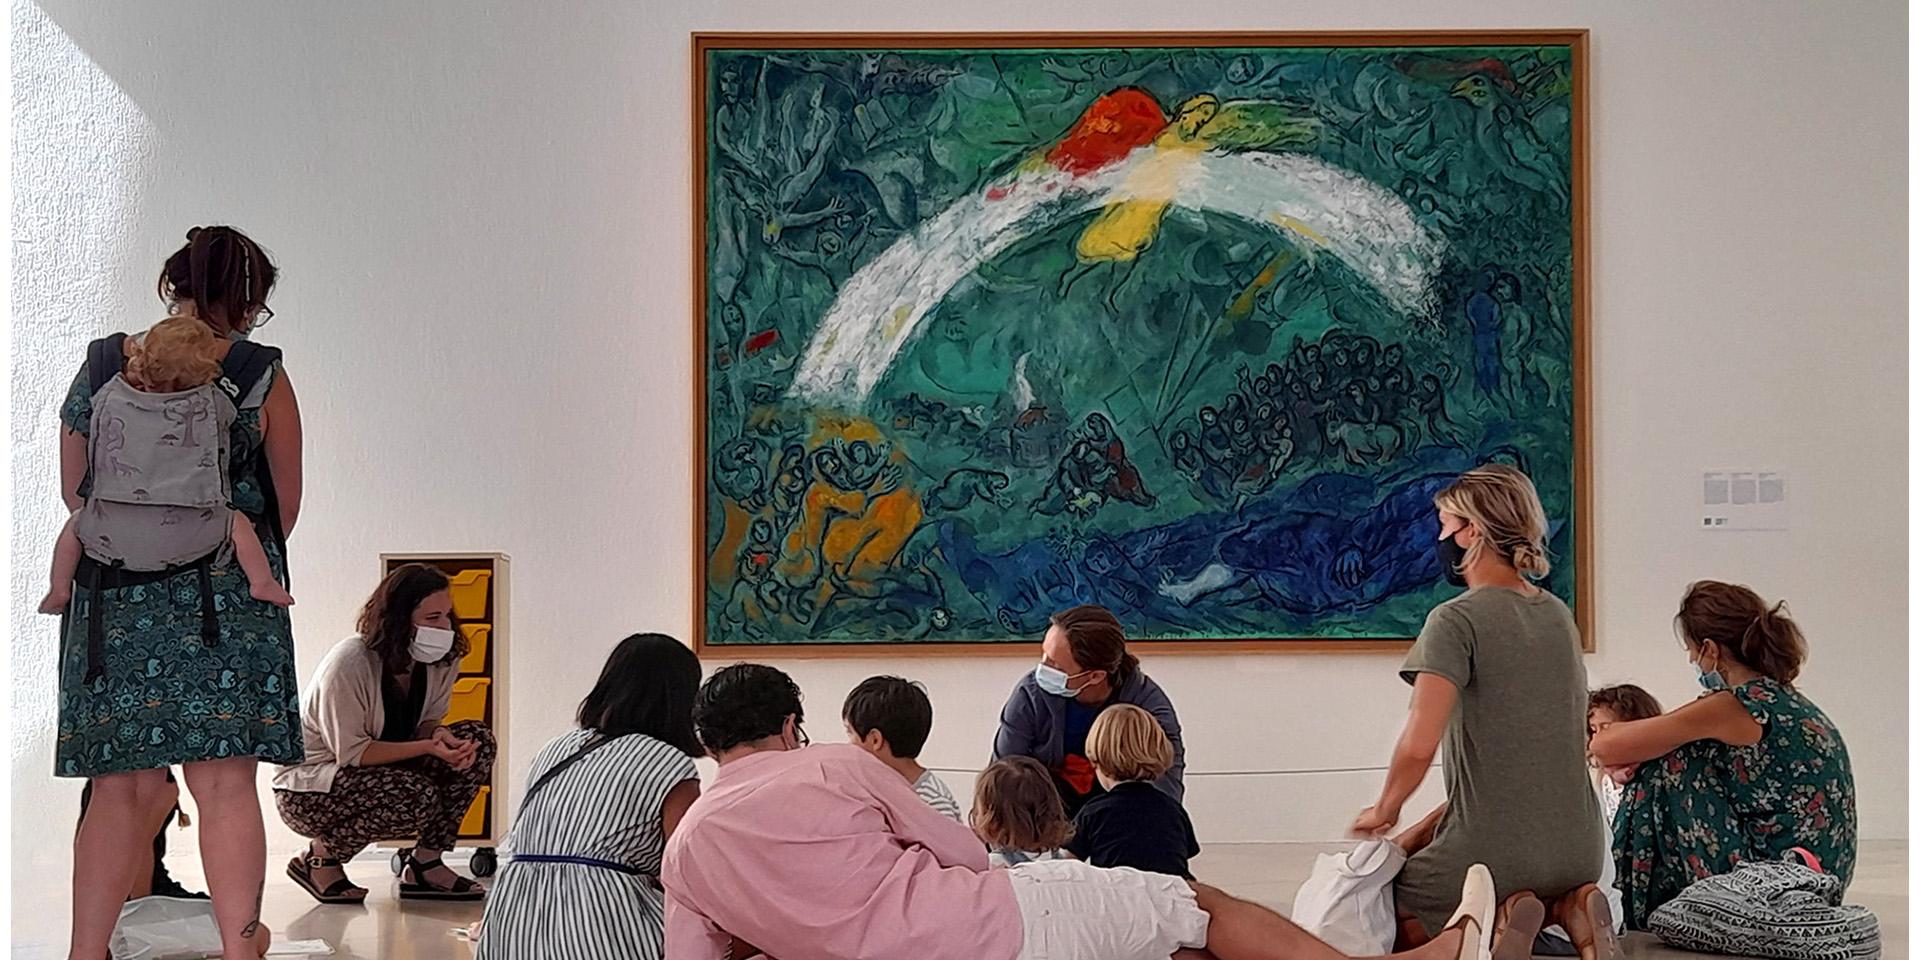 Visite en famille dans la salle du Message Biblique, devant l'œuvre de Marc Chagall, "Noé et l'arc-en-ciel" (1961-1966, huile sur toile). Nice, musée national Marc Chagall. Photo : © DR / musées nationaux du XXe siècle des Alpes-Maritimes © Adagp, Paris, 2021.